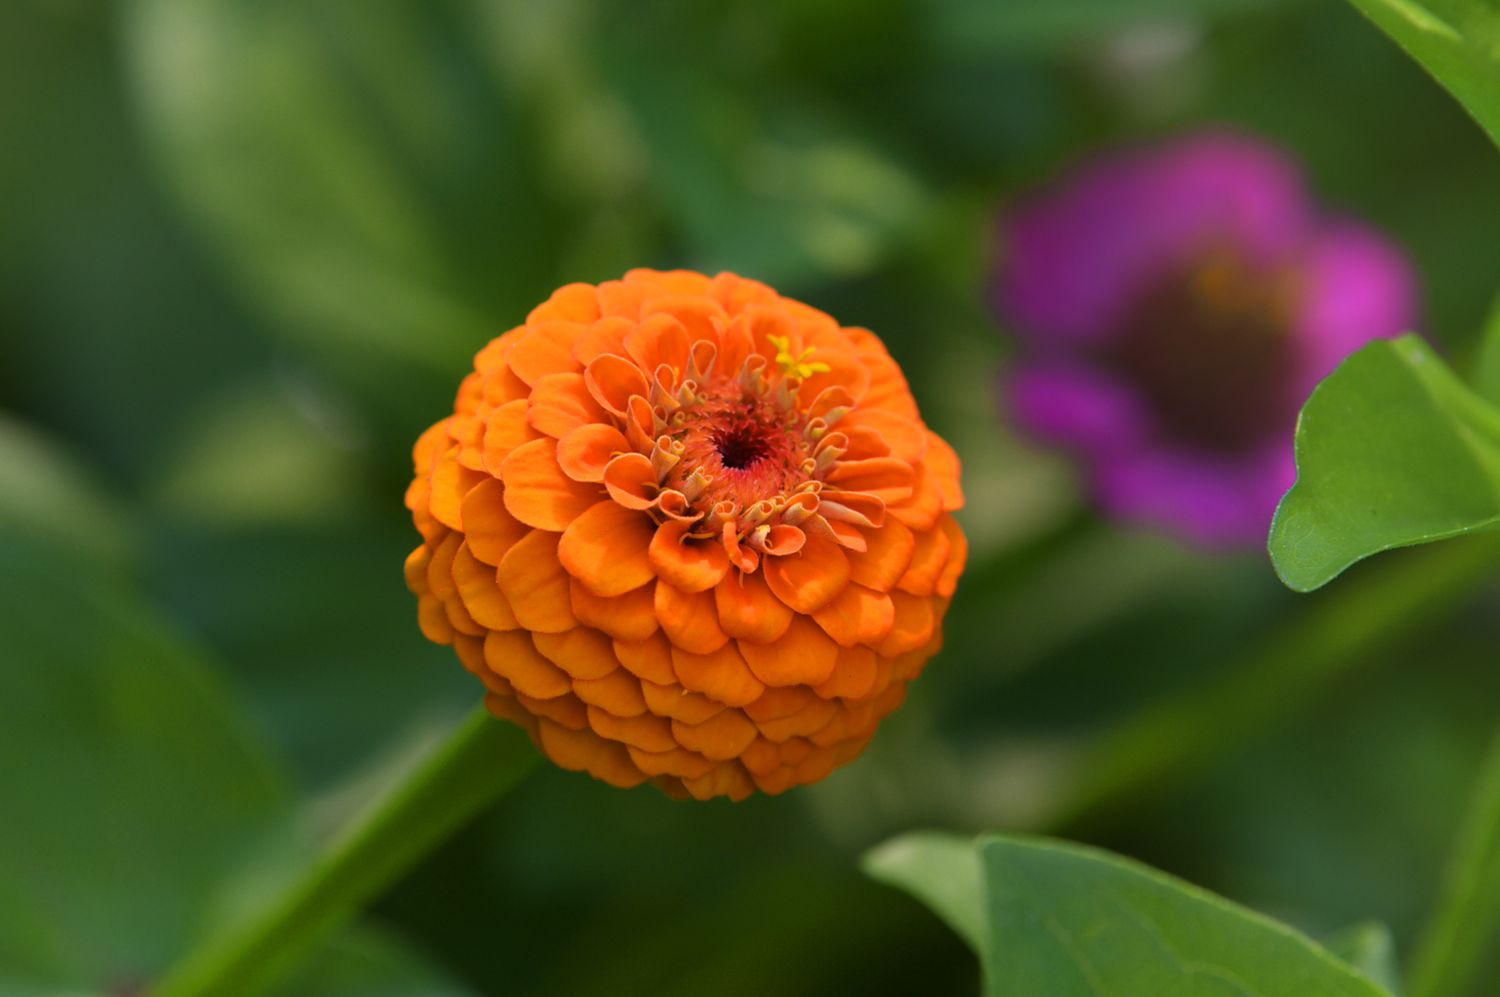 Zinnienpflanze mit orangefarbenen dahlienartigen Blütenblättern in Nahaufnahme